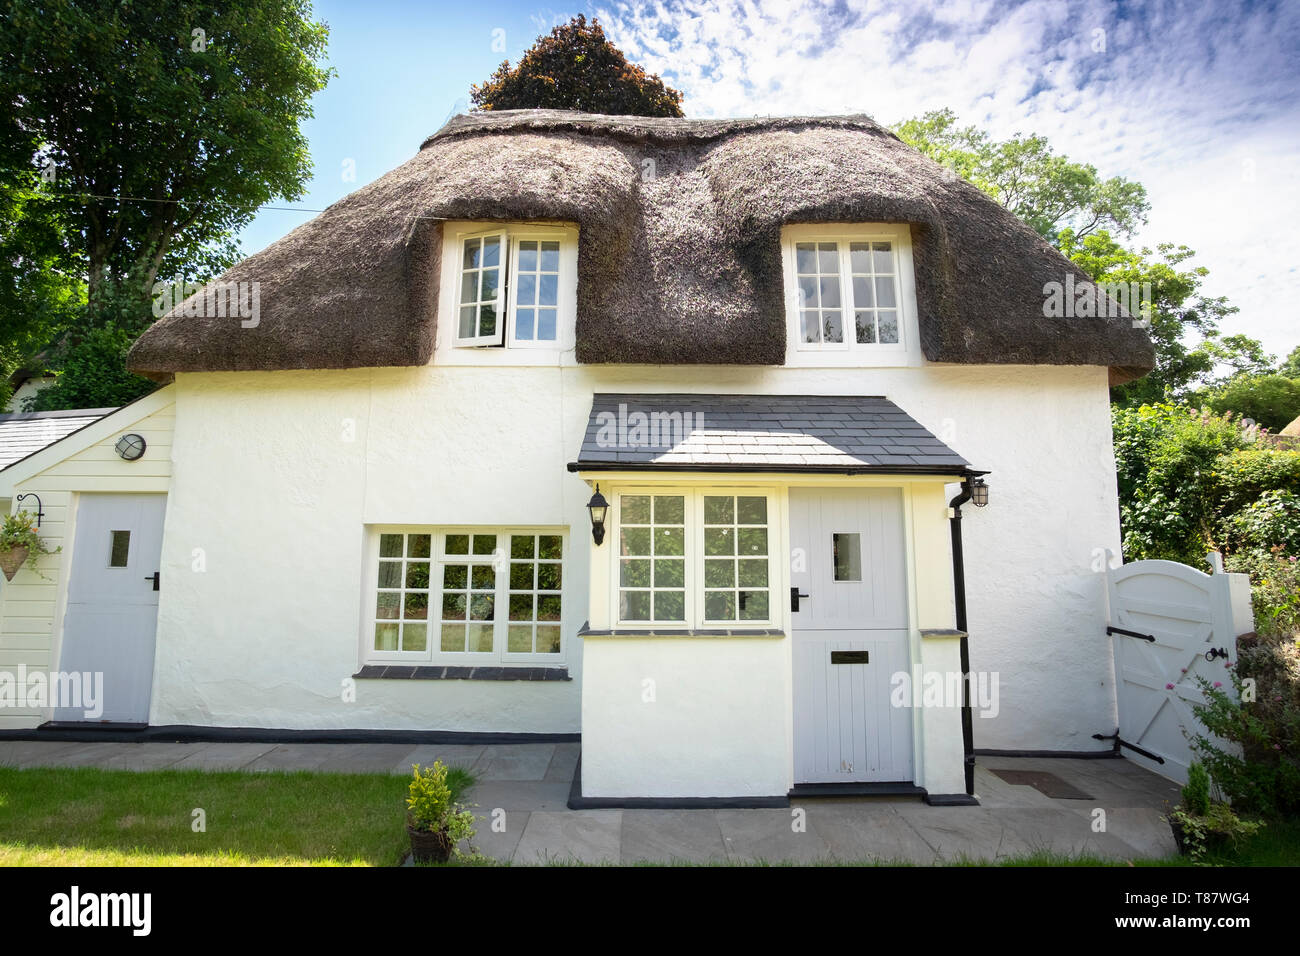 Cottage classique blanc de chaume dans le pittoresque village de chaume de Cockington,Devon, Angleterre, Royaume-Uni Banque D'Images